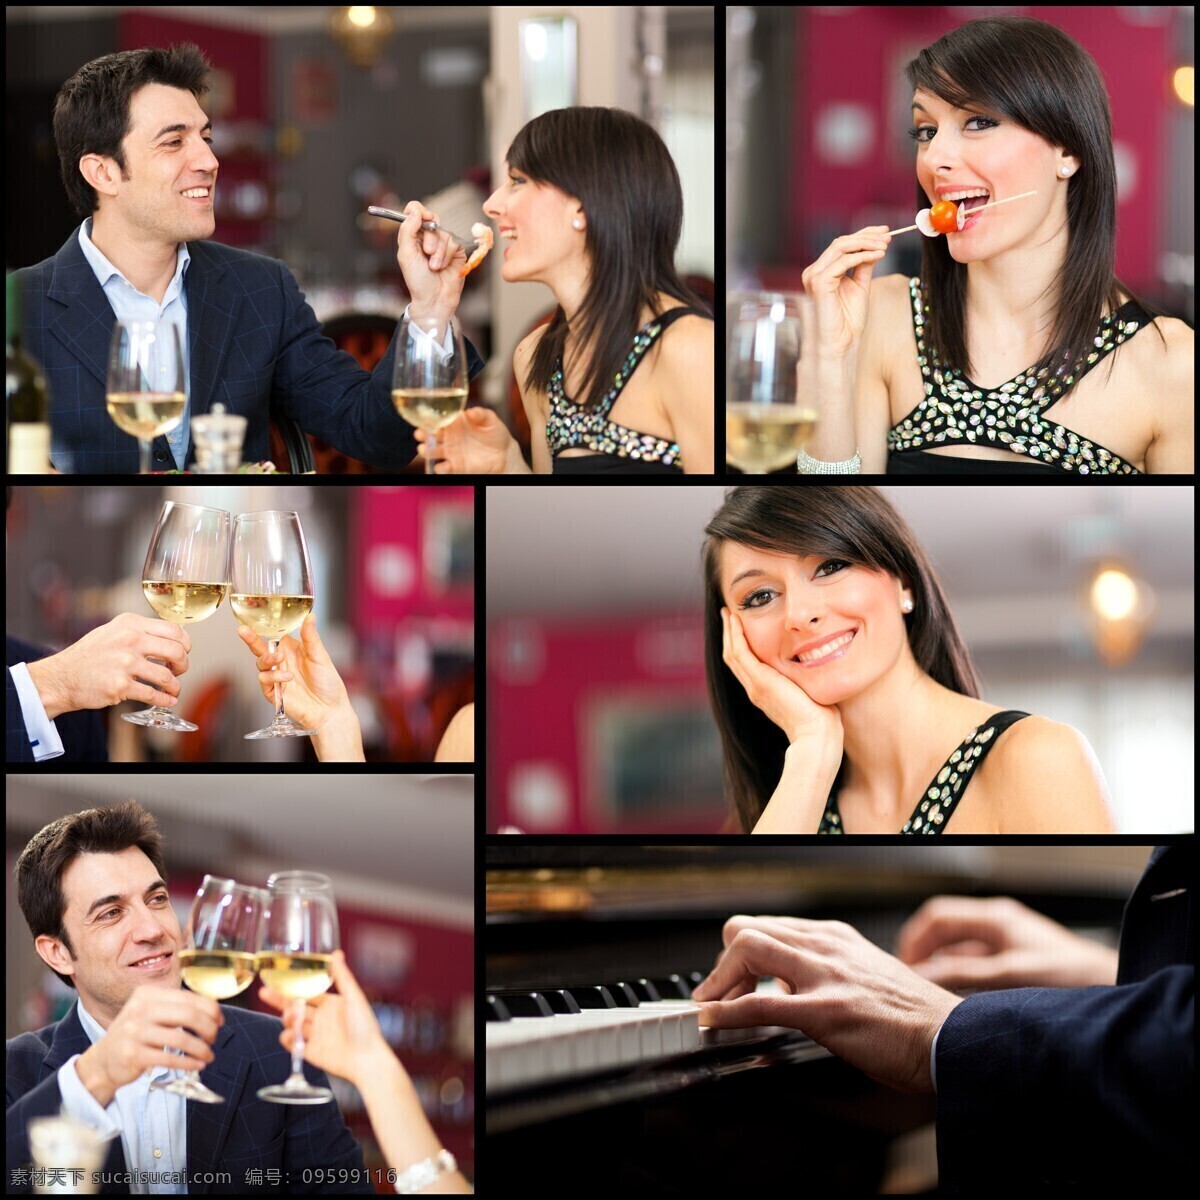 喝酒 男女 餐厅 钢琴 音乐 外国人物 玻璃杯 高角杯 饮料 生活人物 人物图片